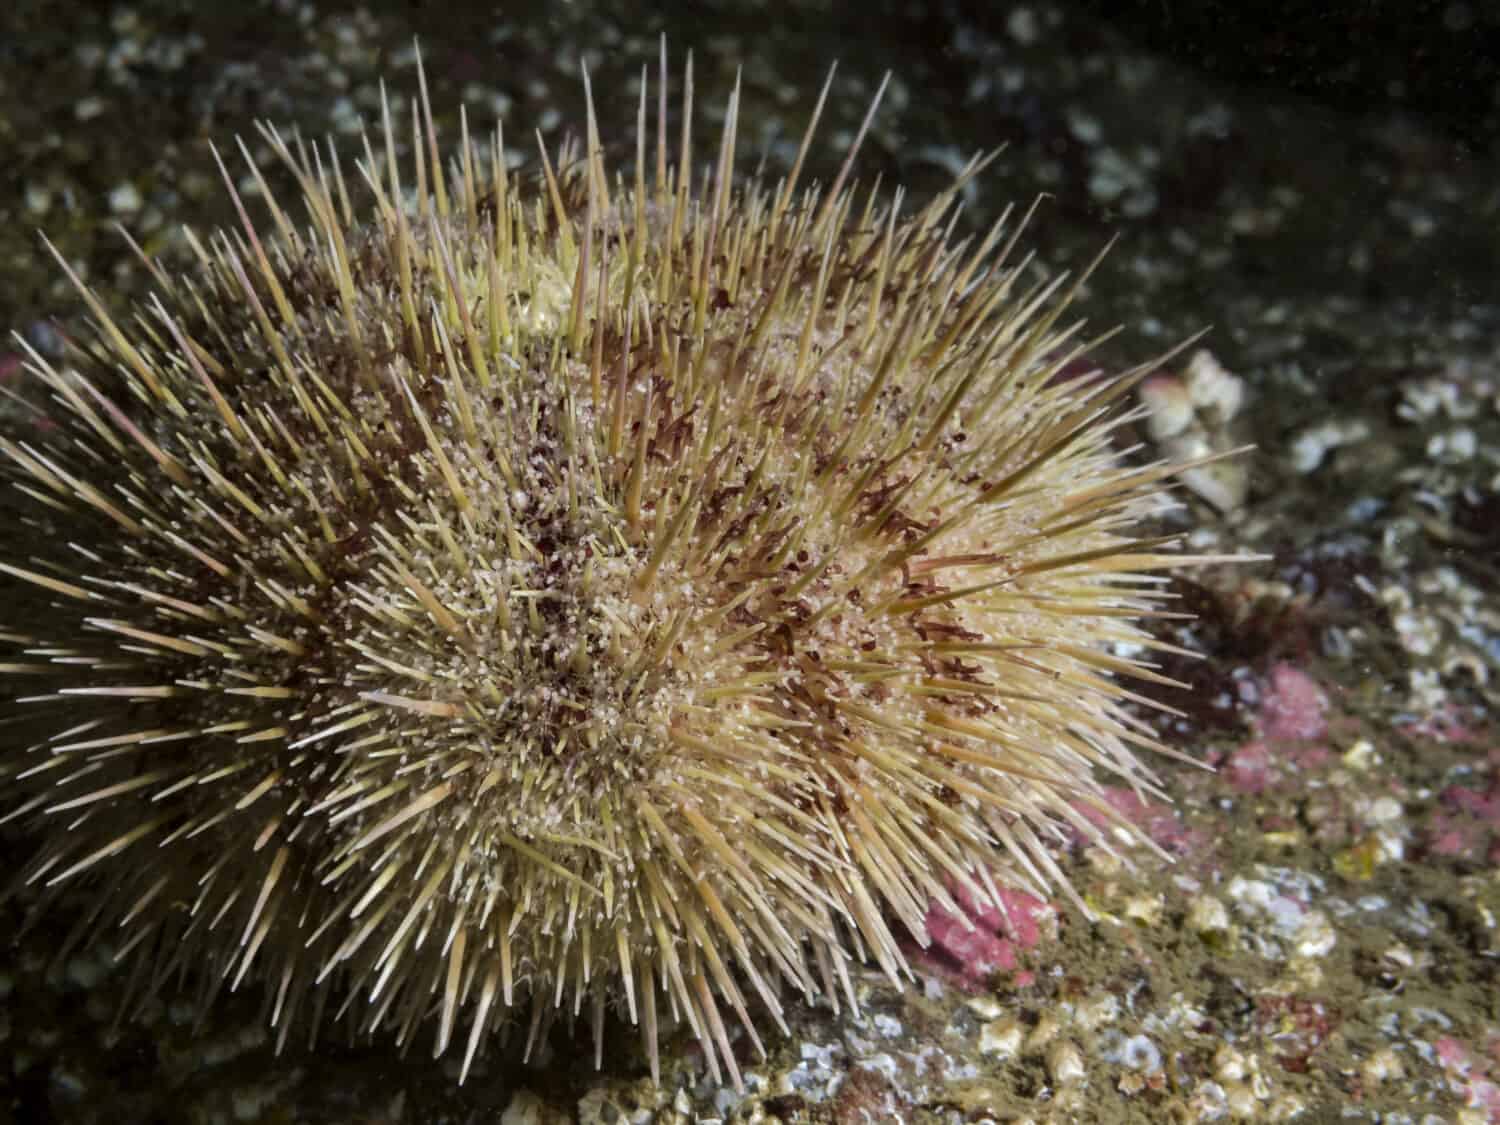 Green Sea Urchin (Strongylocentrotus droebachiensis)Un primo piano di un Green Urchin fotografato durante le immersioni subacquee nella British Columbia, Canada.  Spesso raccolto per uni (gonadi) e spedito in Giappone.